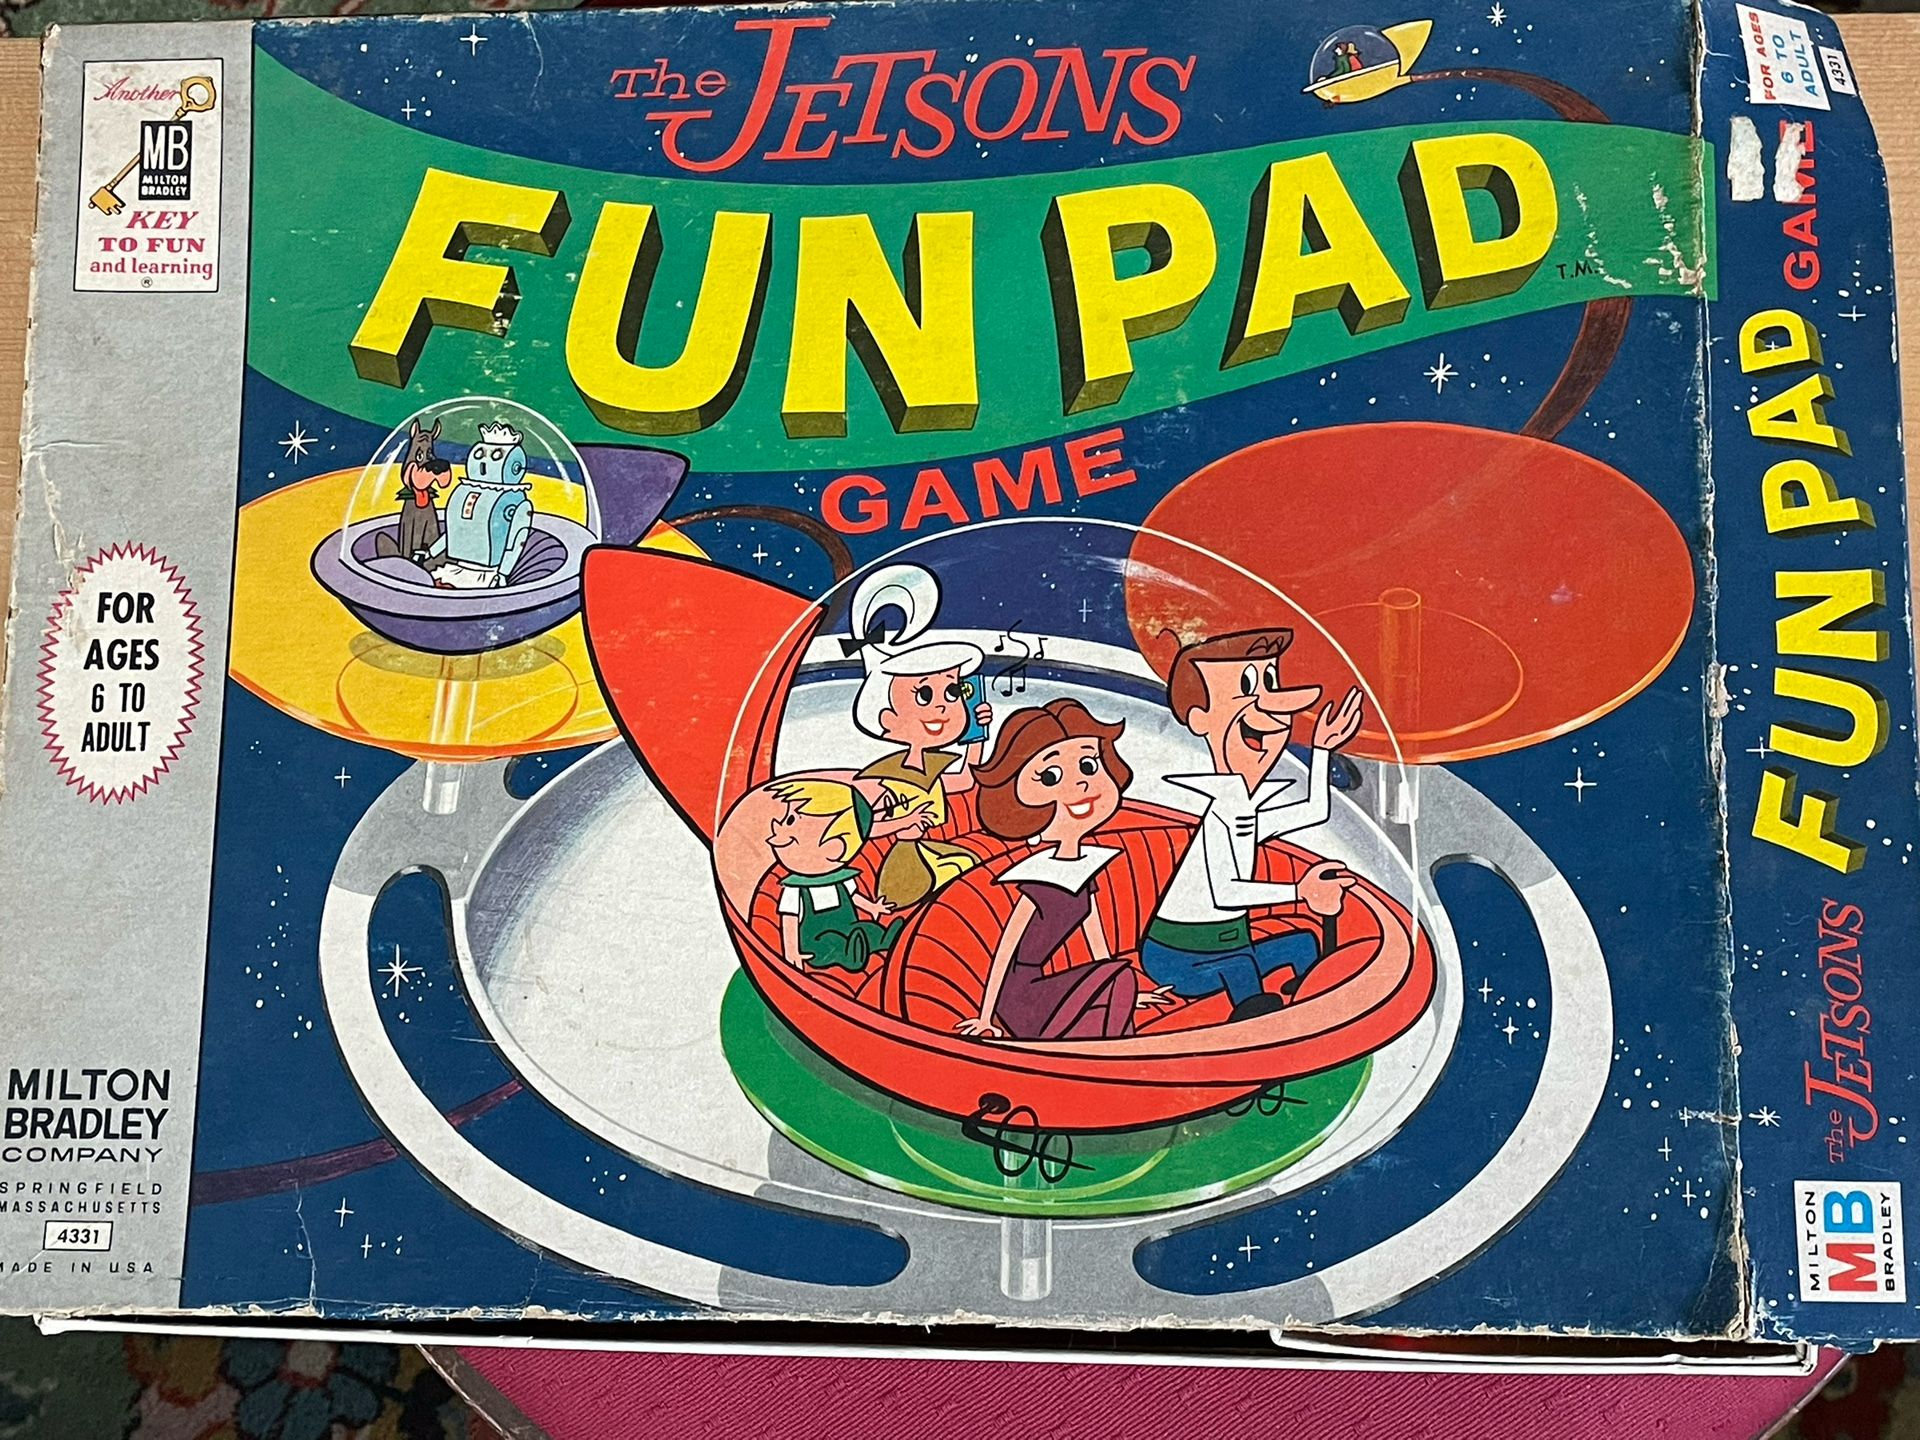 Jetson’s Fun Pad Game